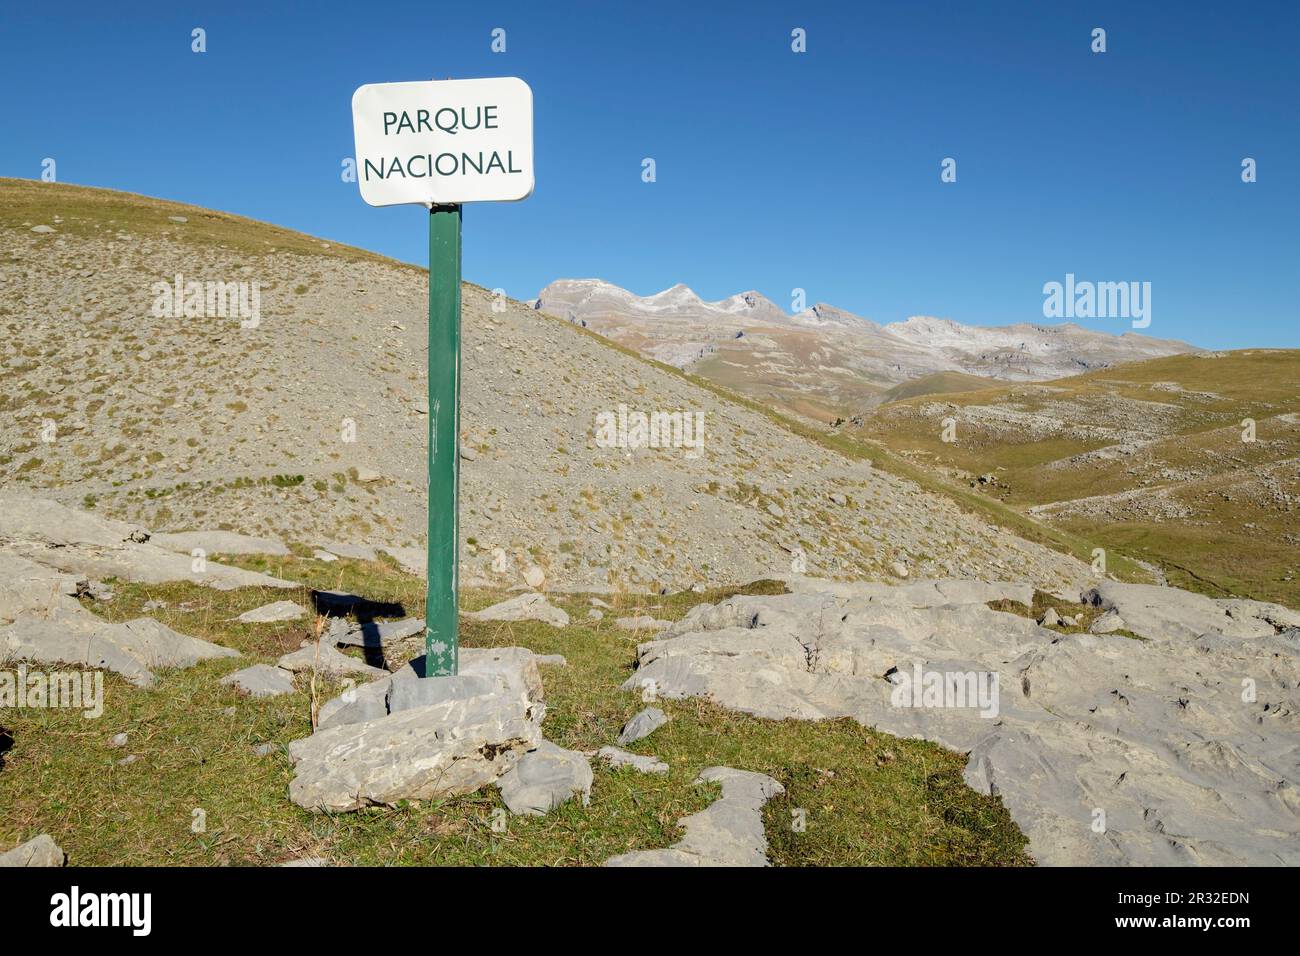 Parque Nacional de Ordesa y Monte Perdido, comarca del Sobrarbe, Huesca, Aragón, cordillera de los Pirineos, Espagne. Banque D'Images